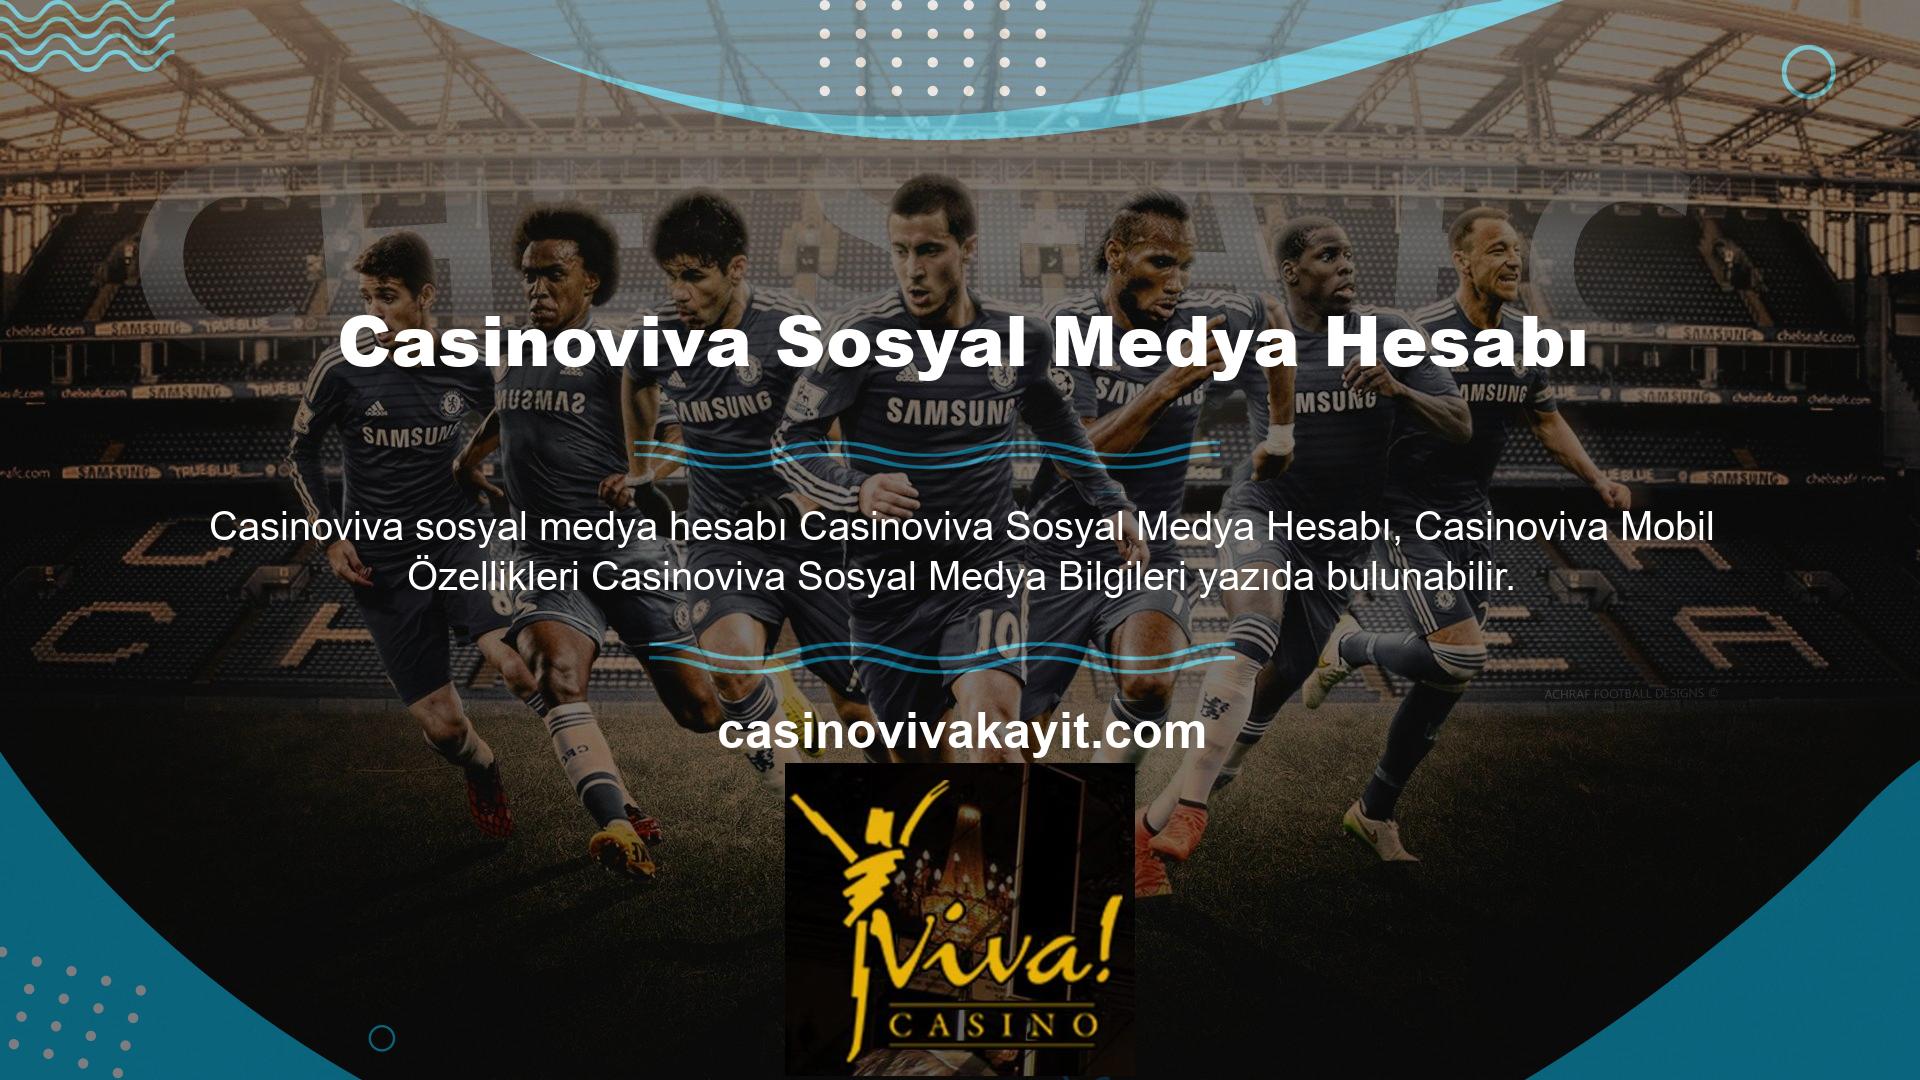 Casinoviva Sosyal Medya Hesapları Sosyal medya hesapları ile canlı casino sitesi